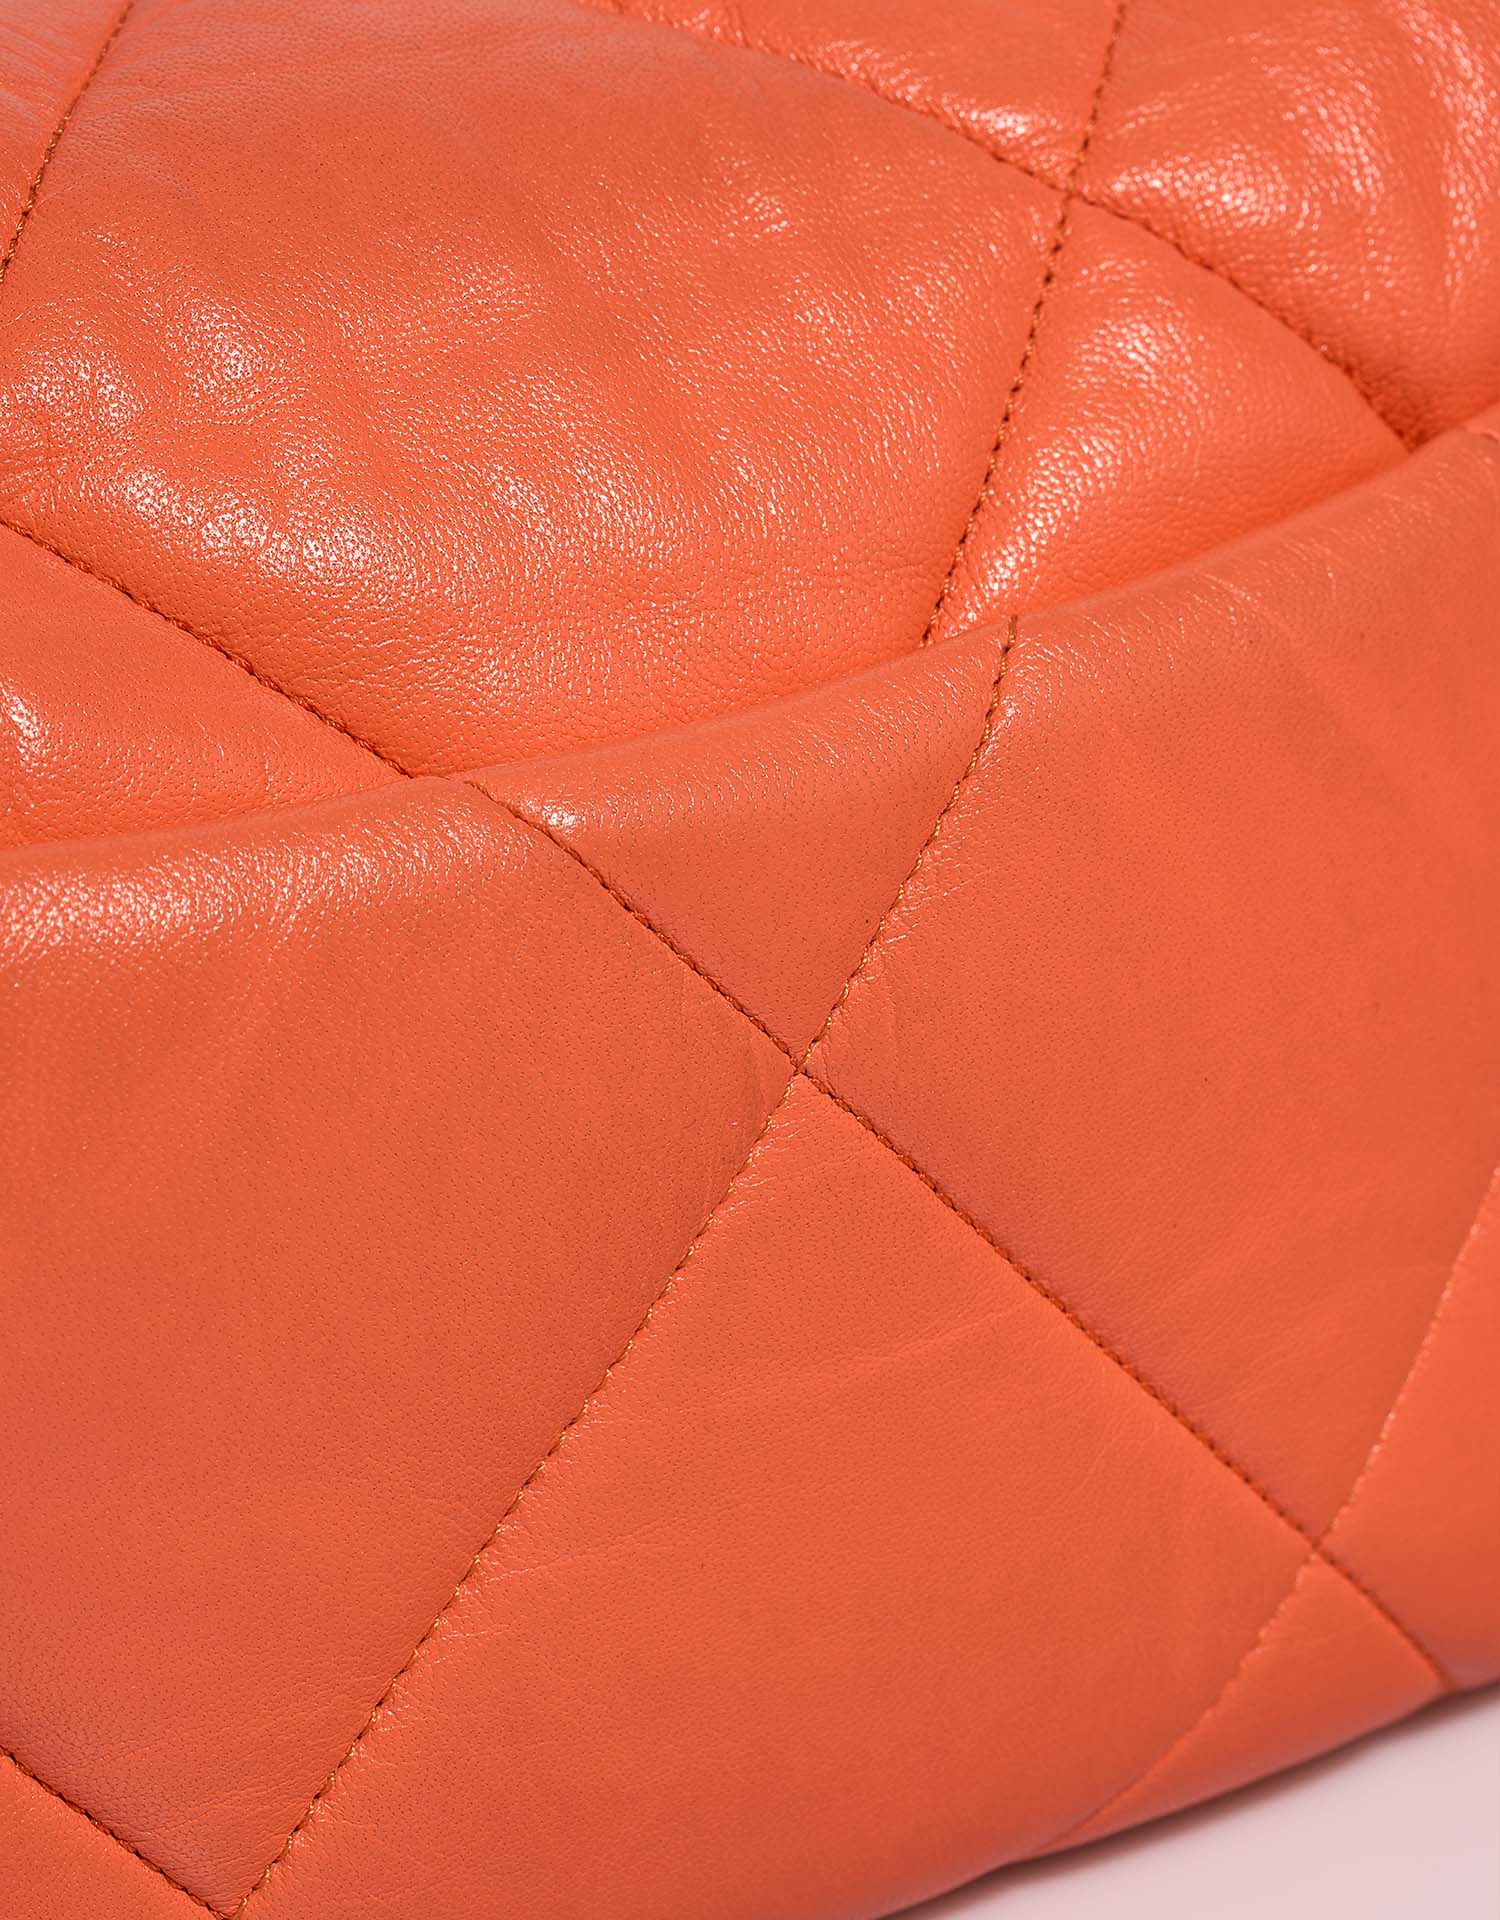 Chanel 19 FlapBag Orange signs of wear | Sell your designer bag on Saclab.com